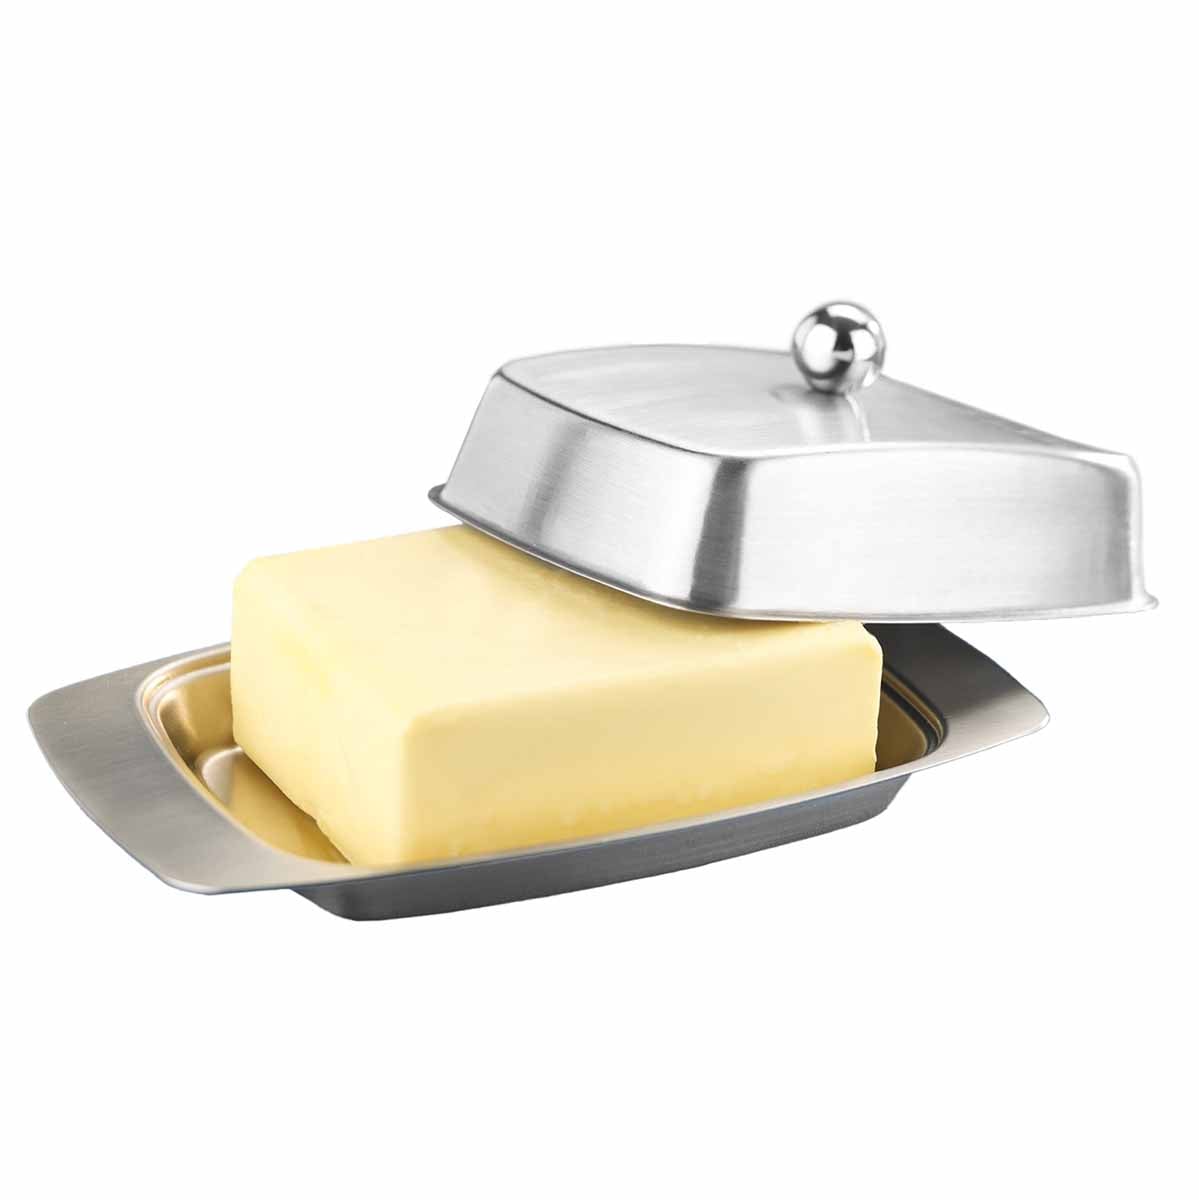 Butterdose aus Edelstahl - Hält Ihre Butter temperiert und frisch | Maximex